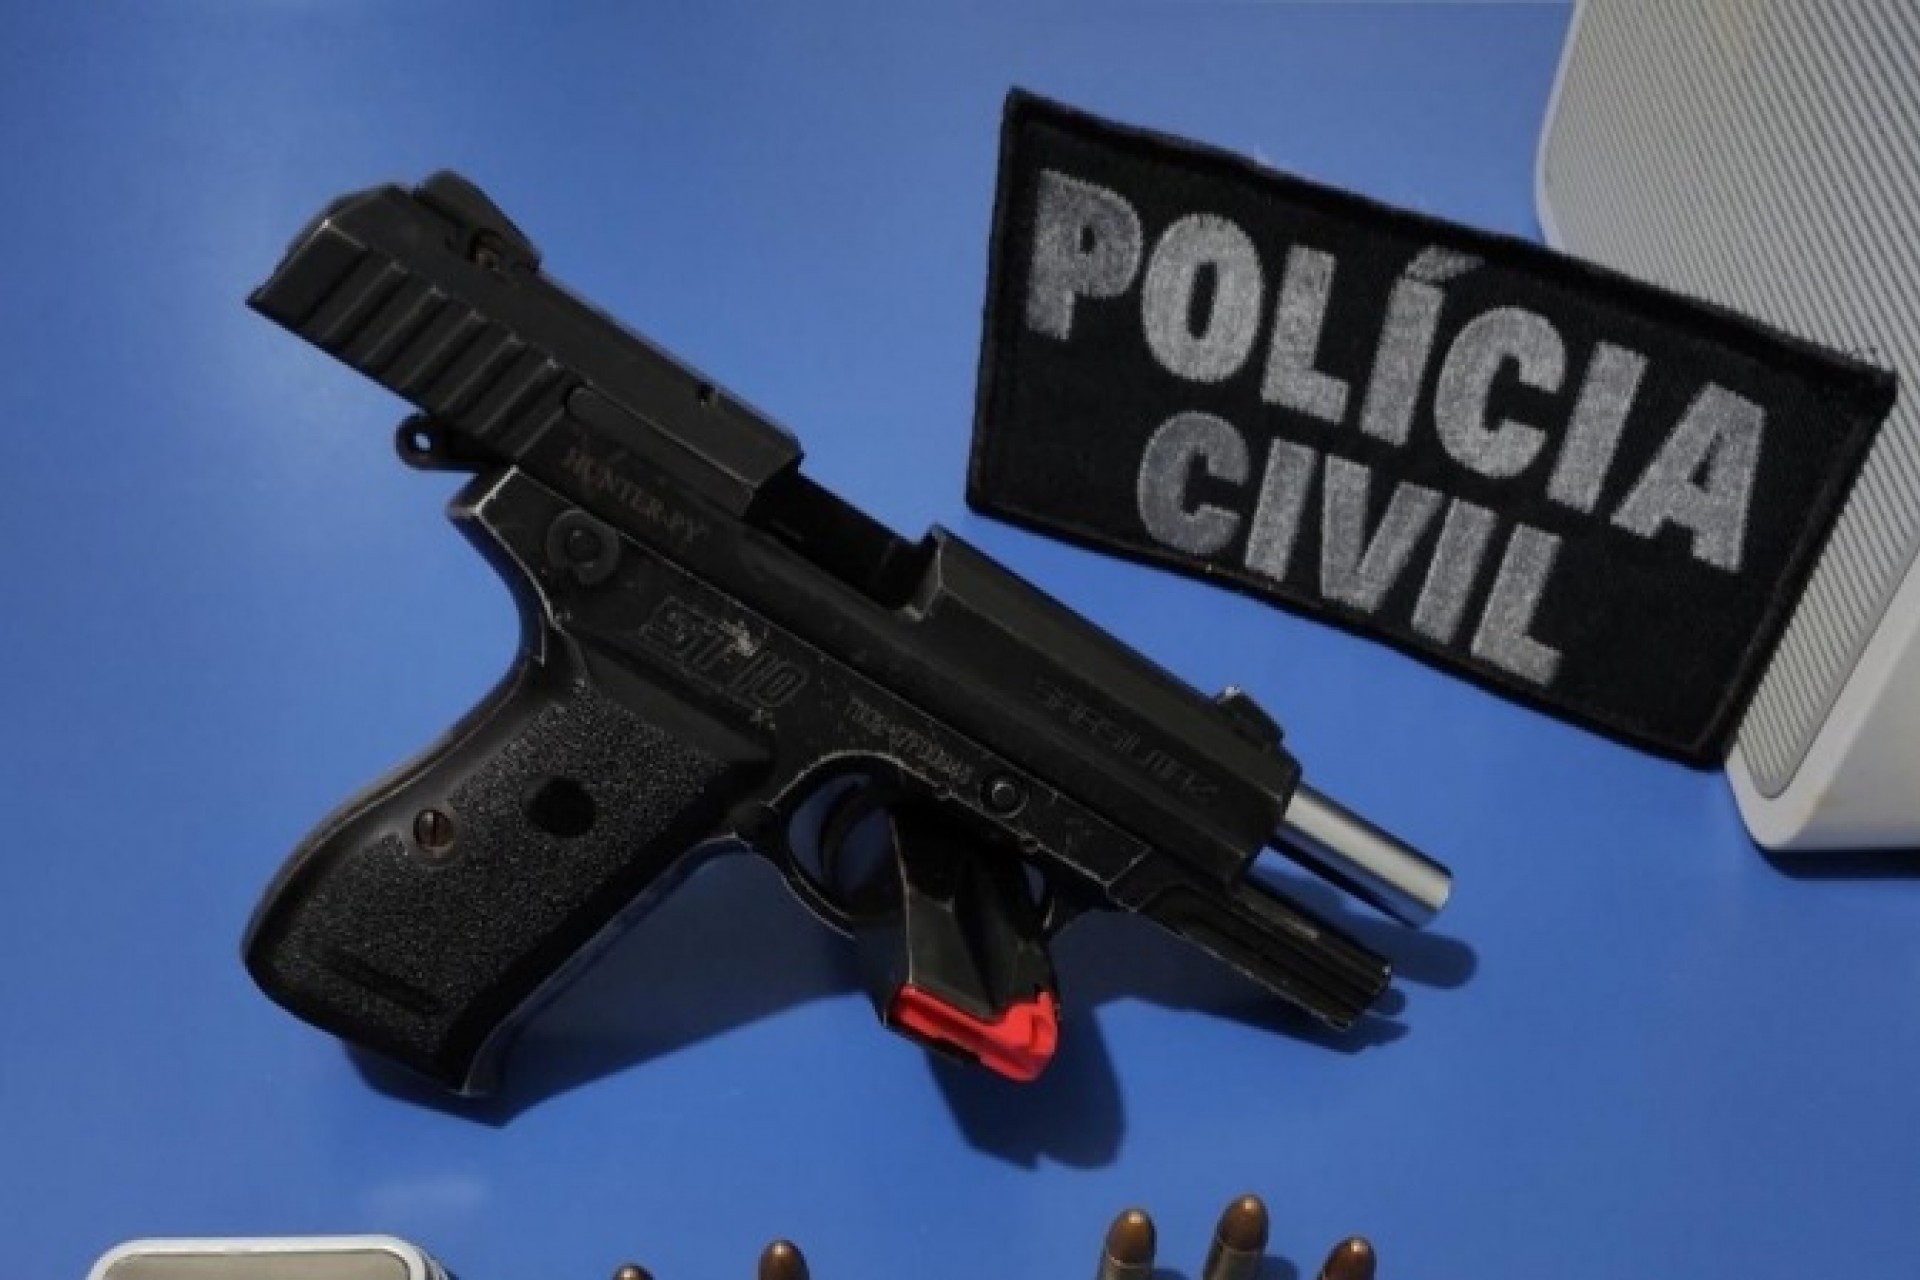 Polícia prende homem armado em Santa Helena